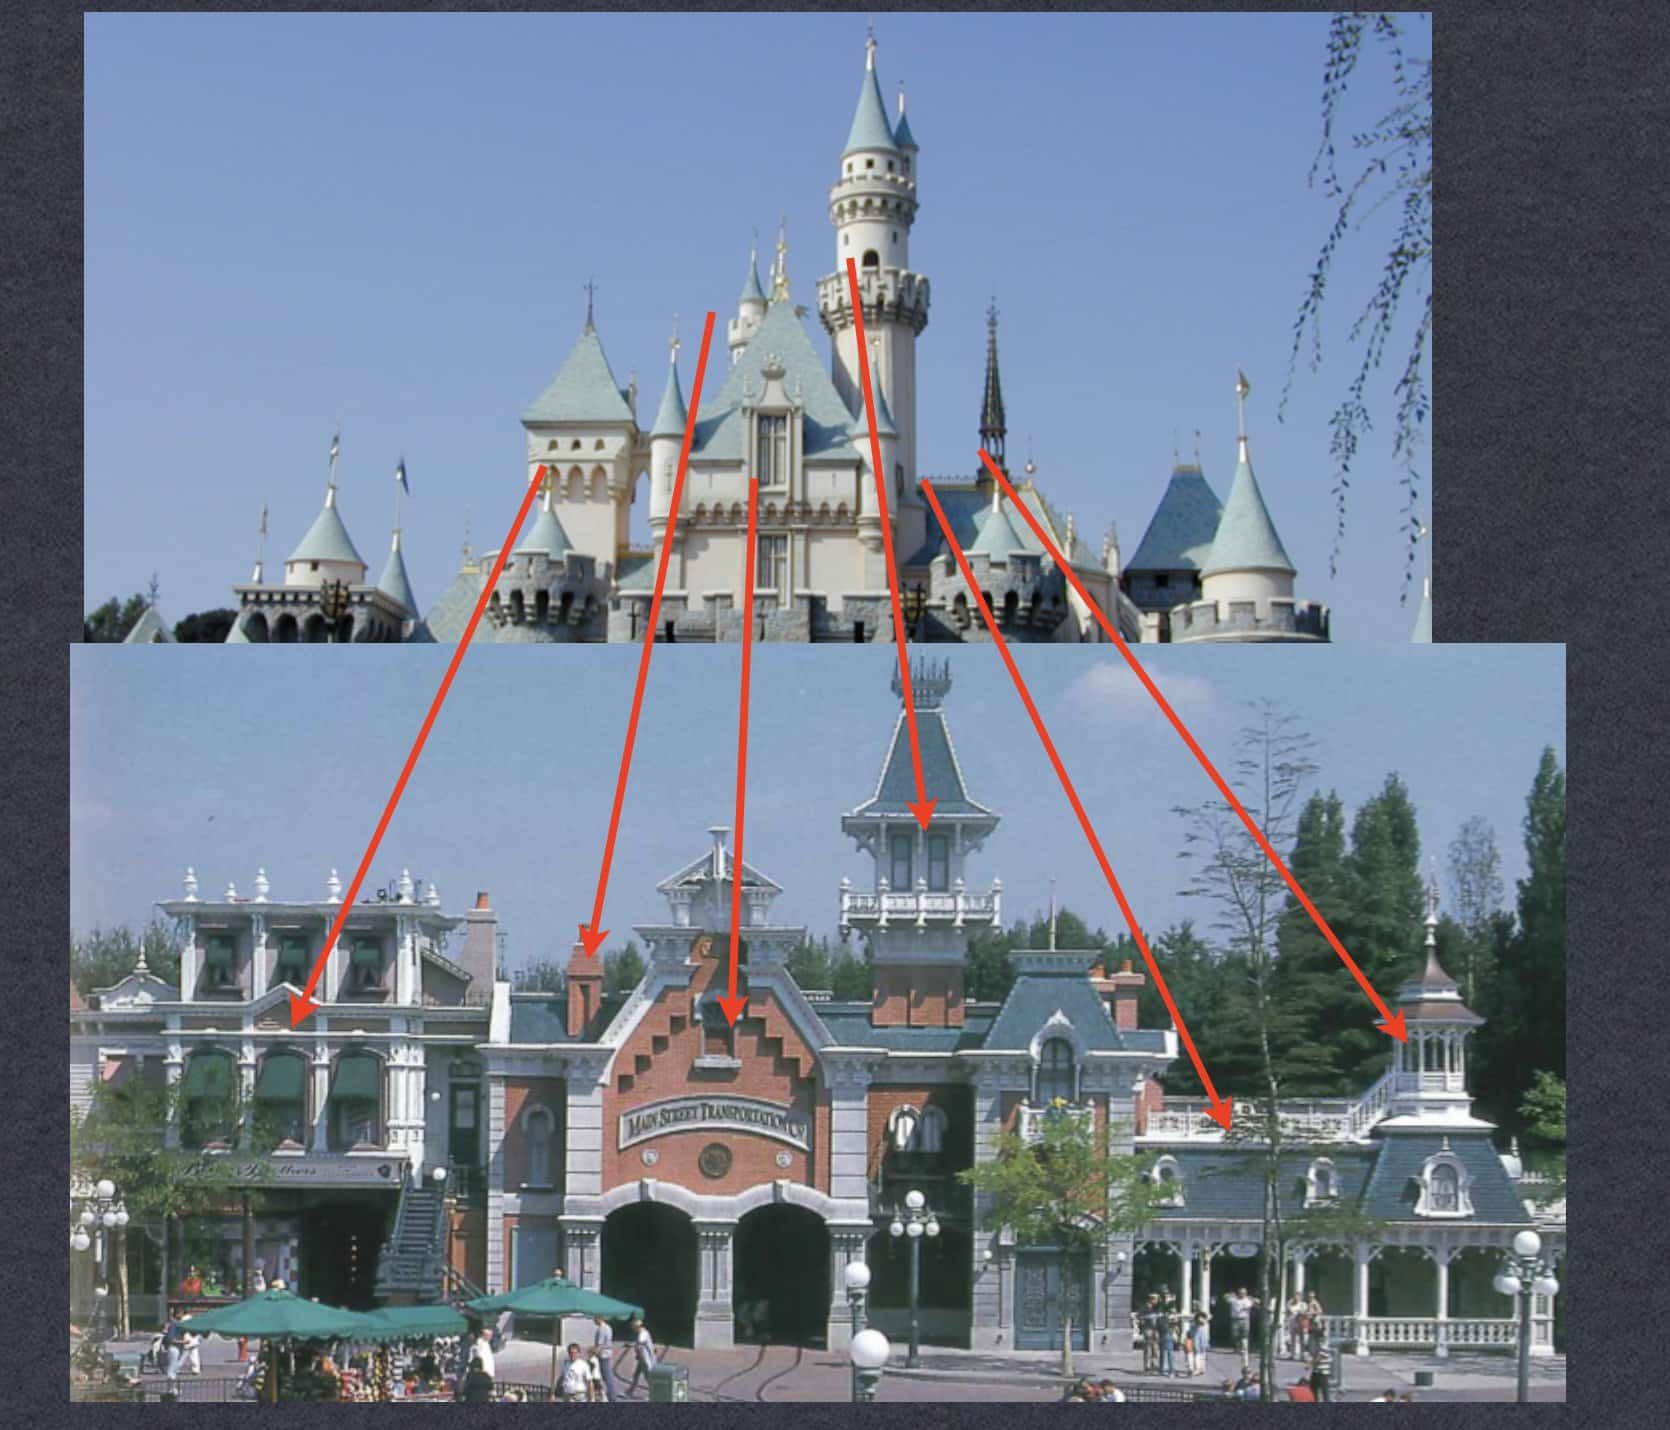 Inside the Disneyland Paris Castle • Mouse Travel Matters